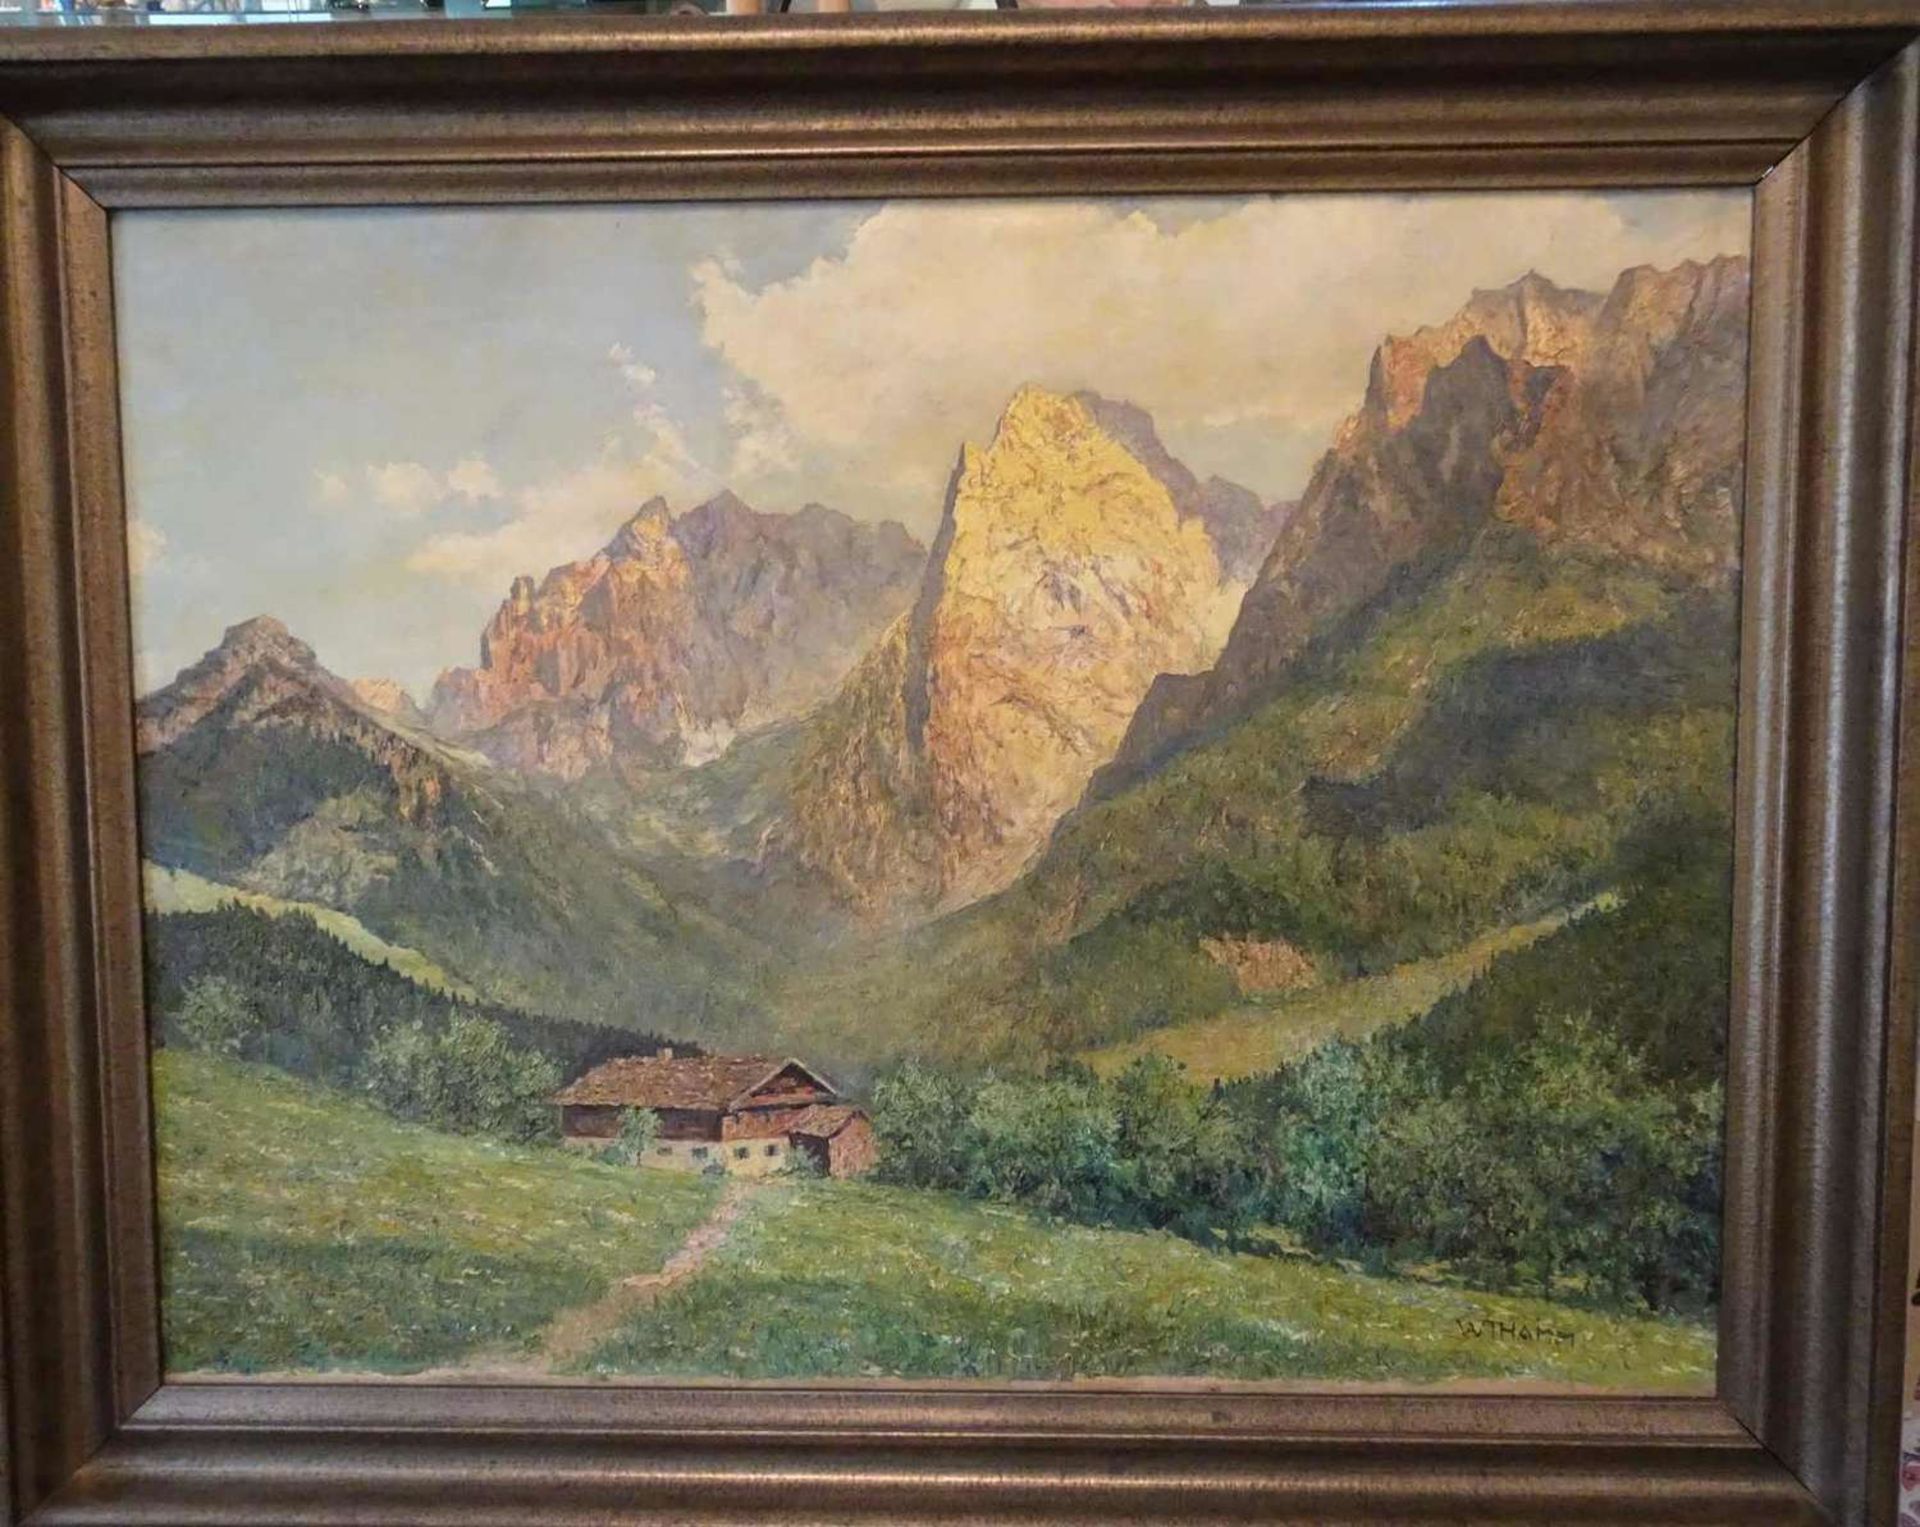 Walter Thamm (1885-1938), Ölgemälde auf Leinwand "Bauernhof im Hochgebirge", signiert. Im altem